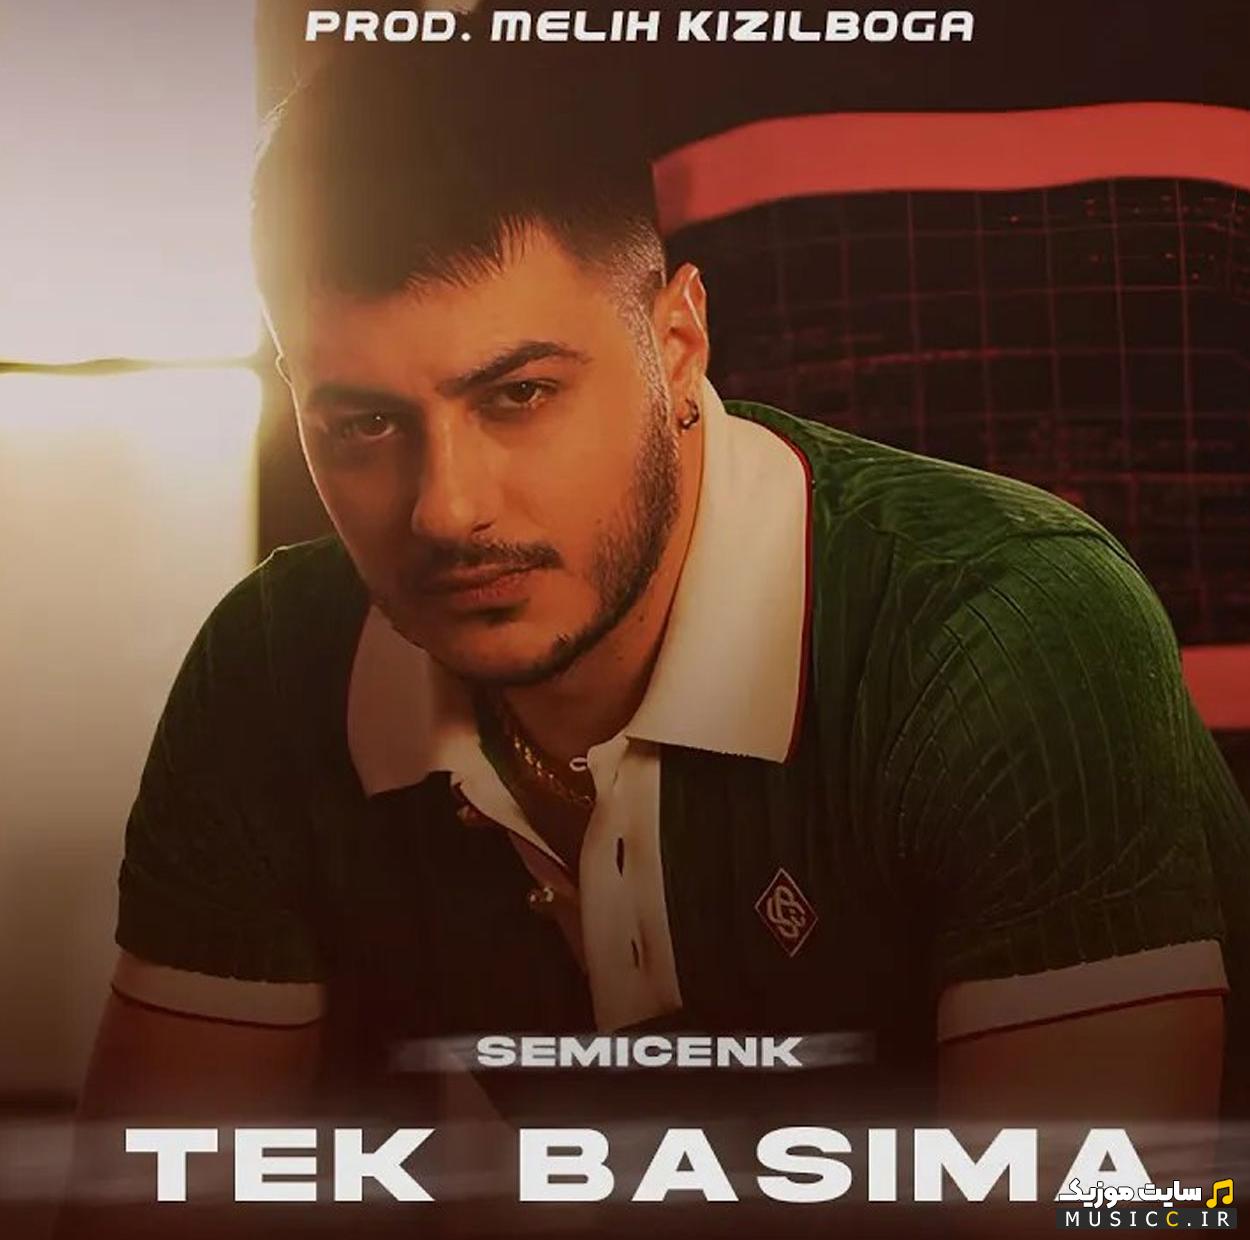 دانلود آهنگ ترکیه ای Tek Başıma از Semicenk اصلی (MP3)